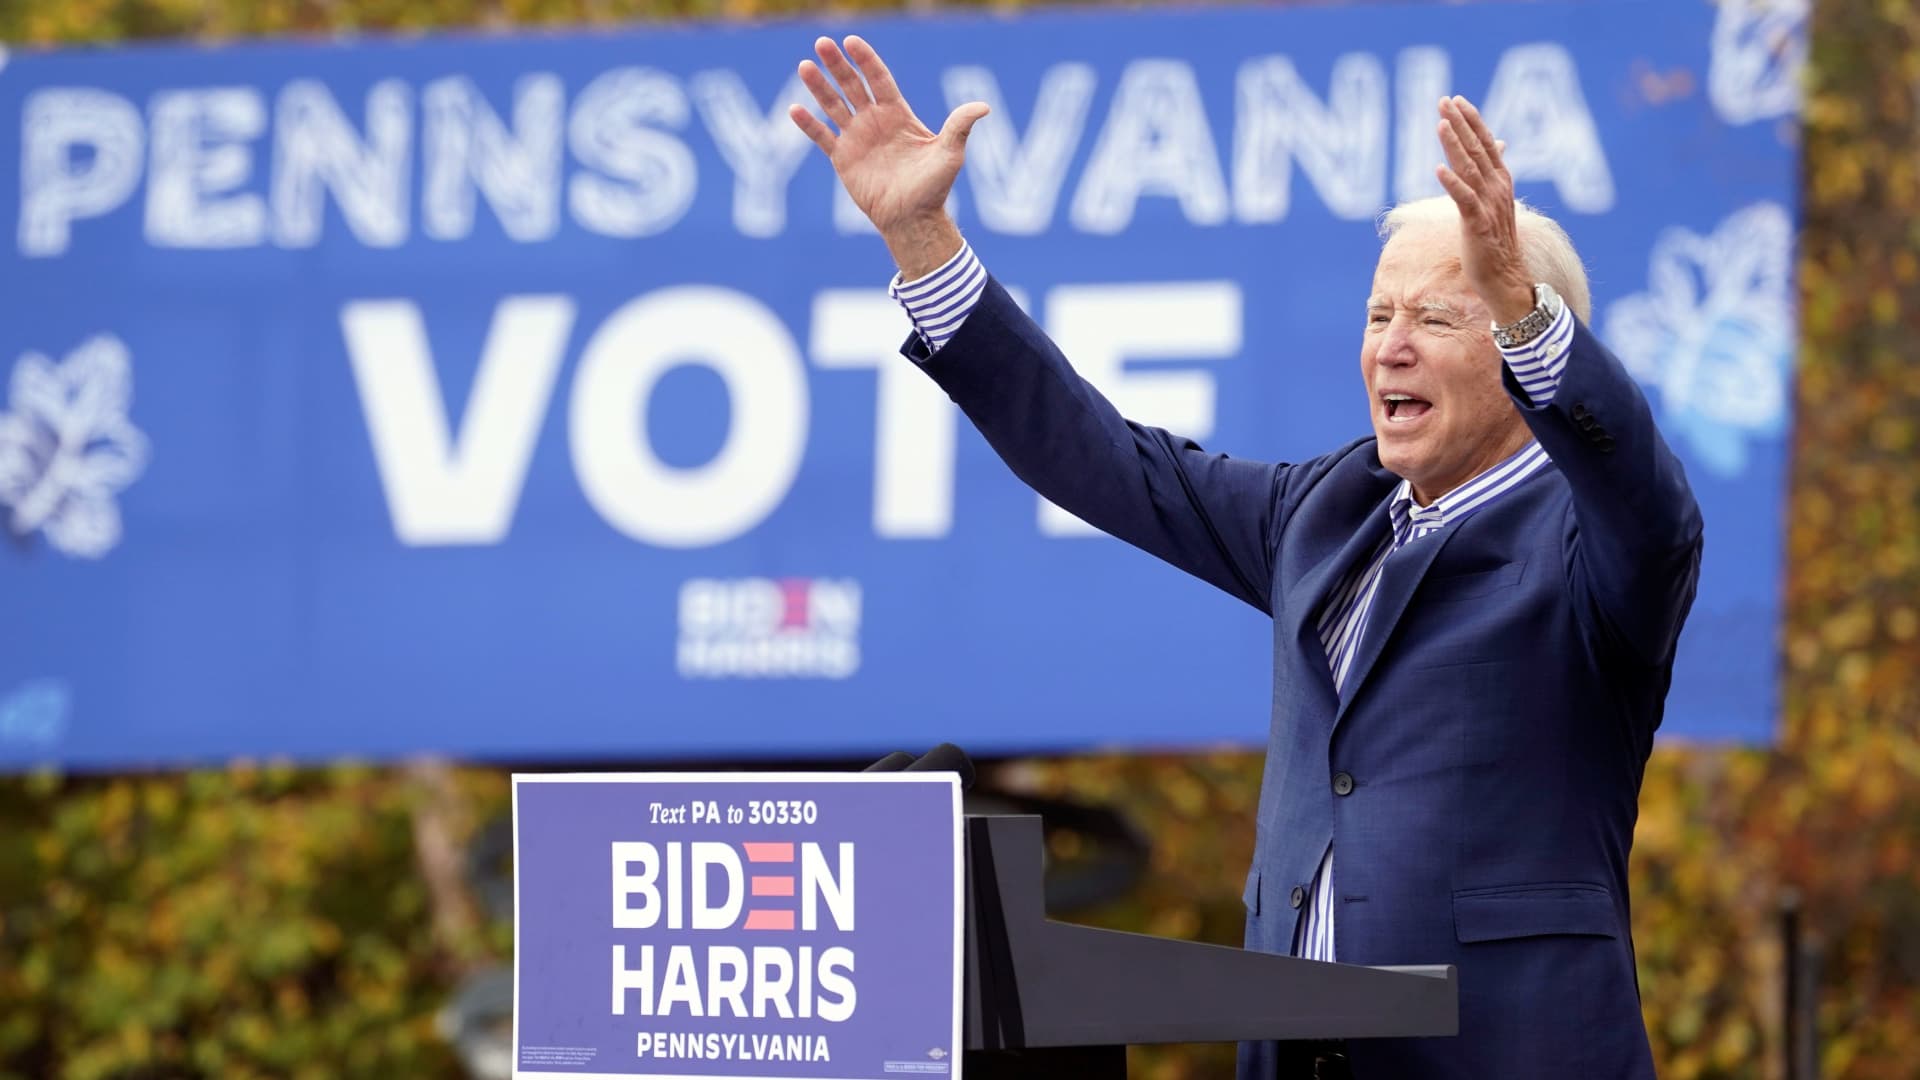 Presidenti Biden vazhdon fushatën në Pensilvani!